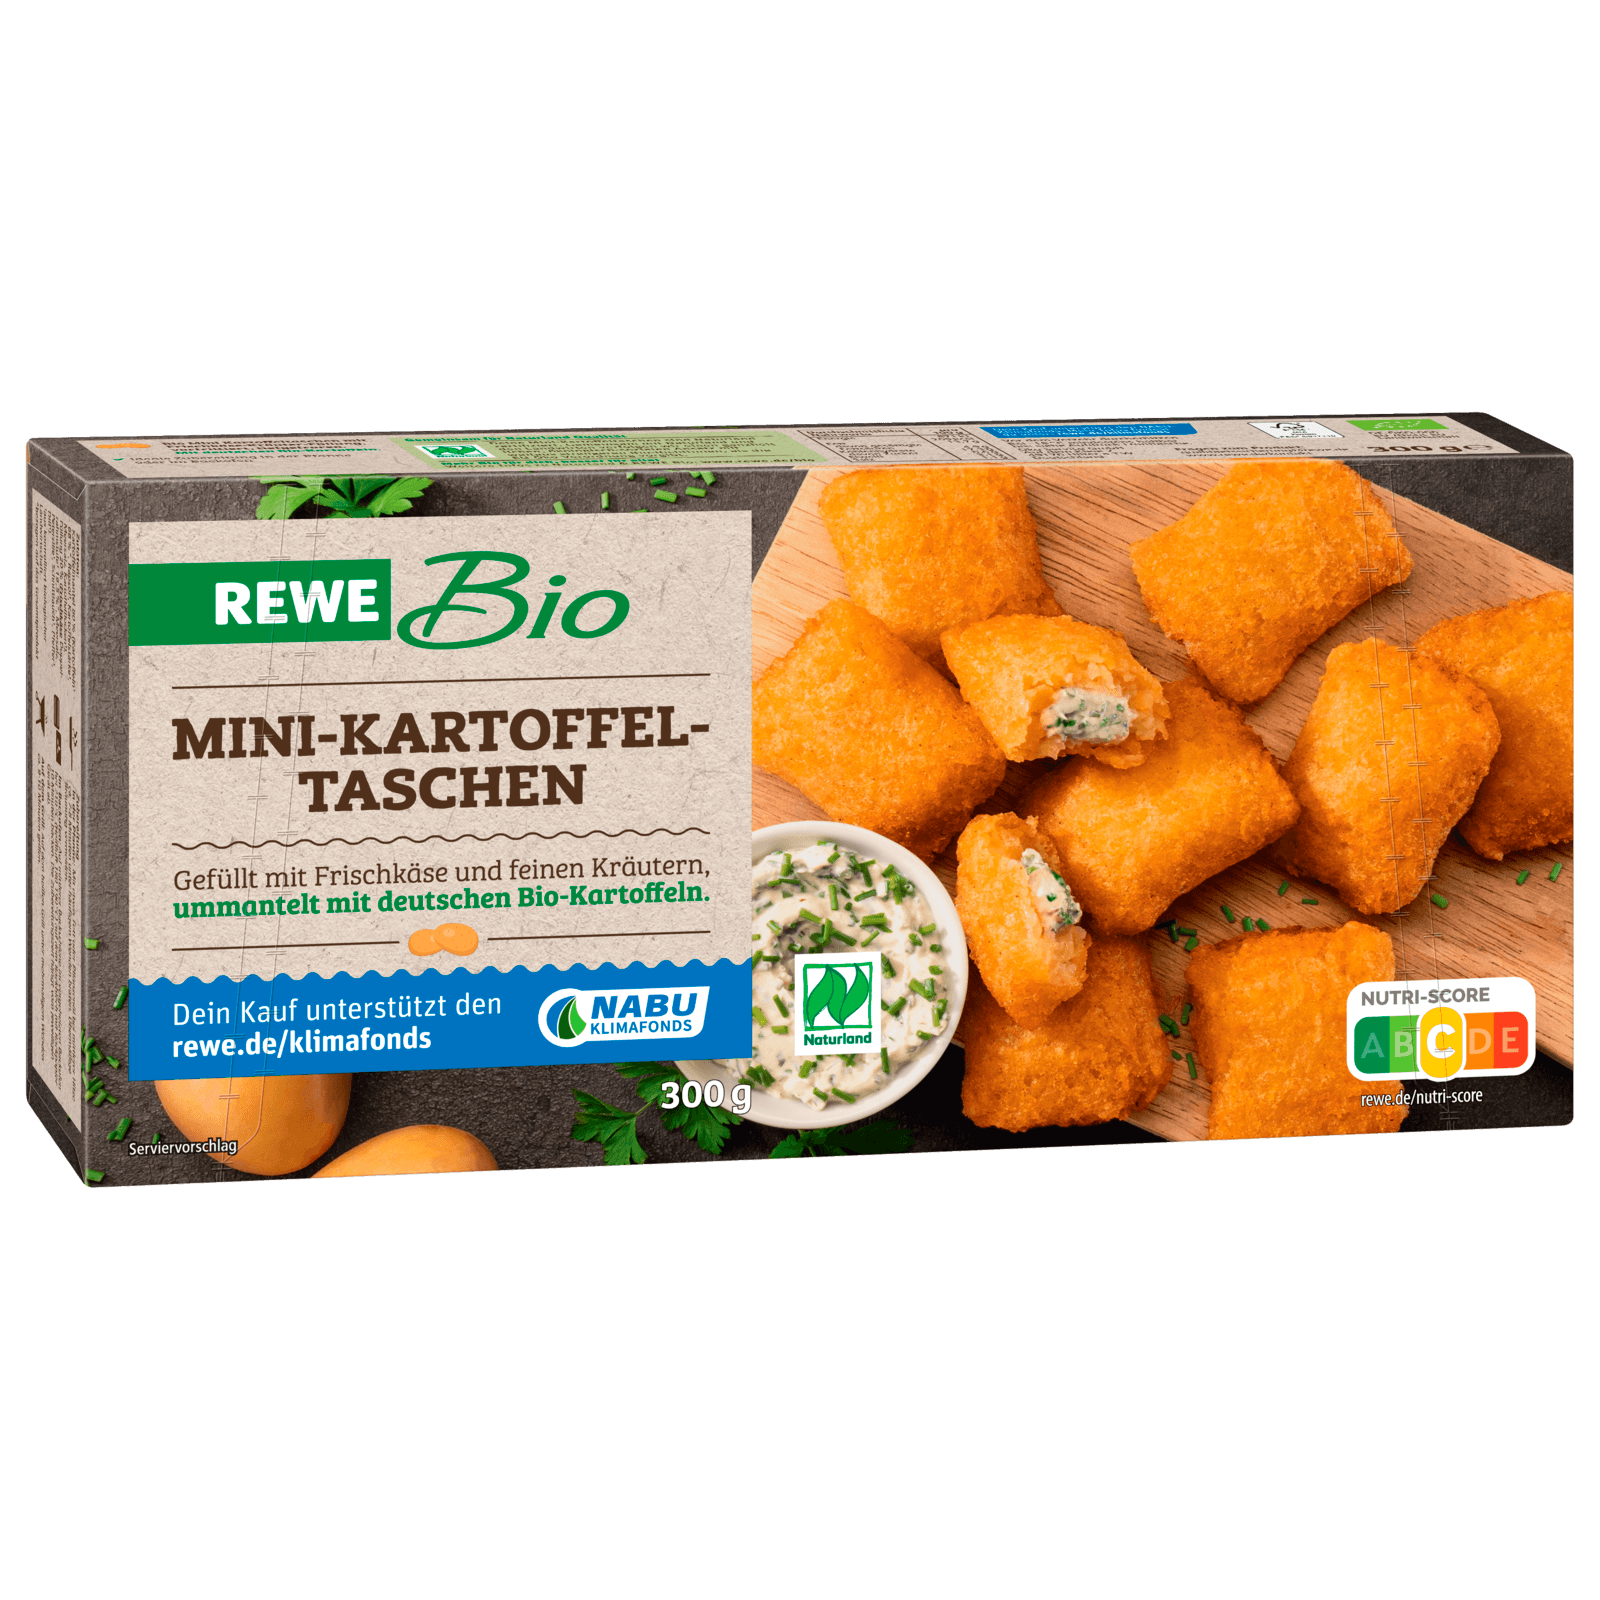 REWE Bio Mini-Kartoffel-Taschen 300g